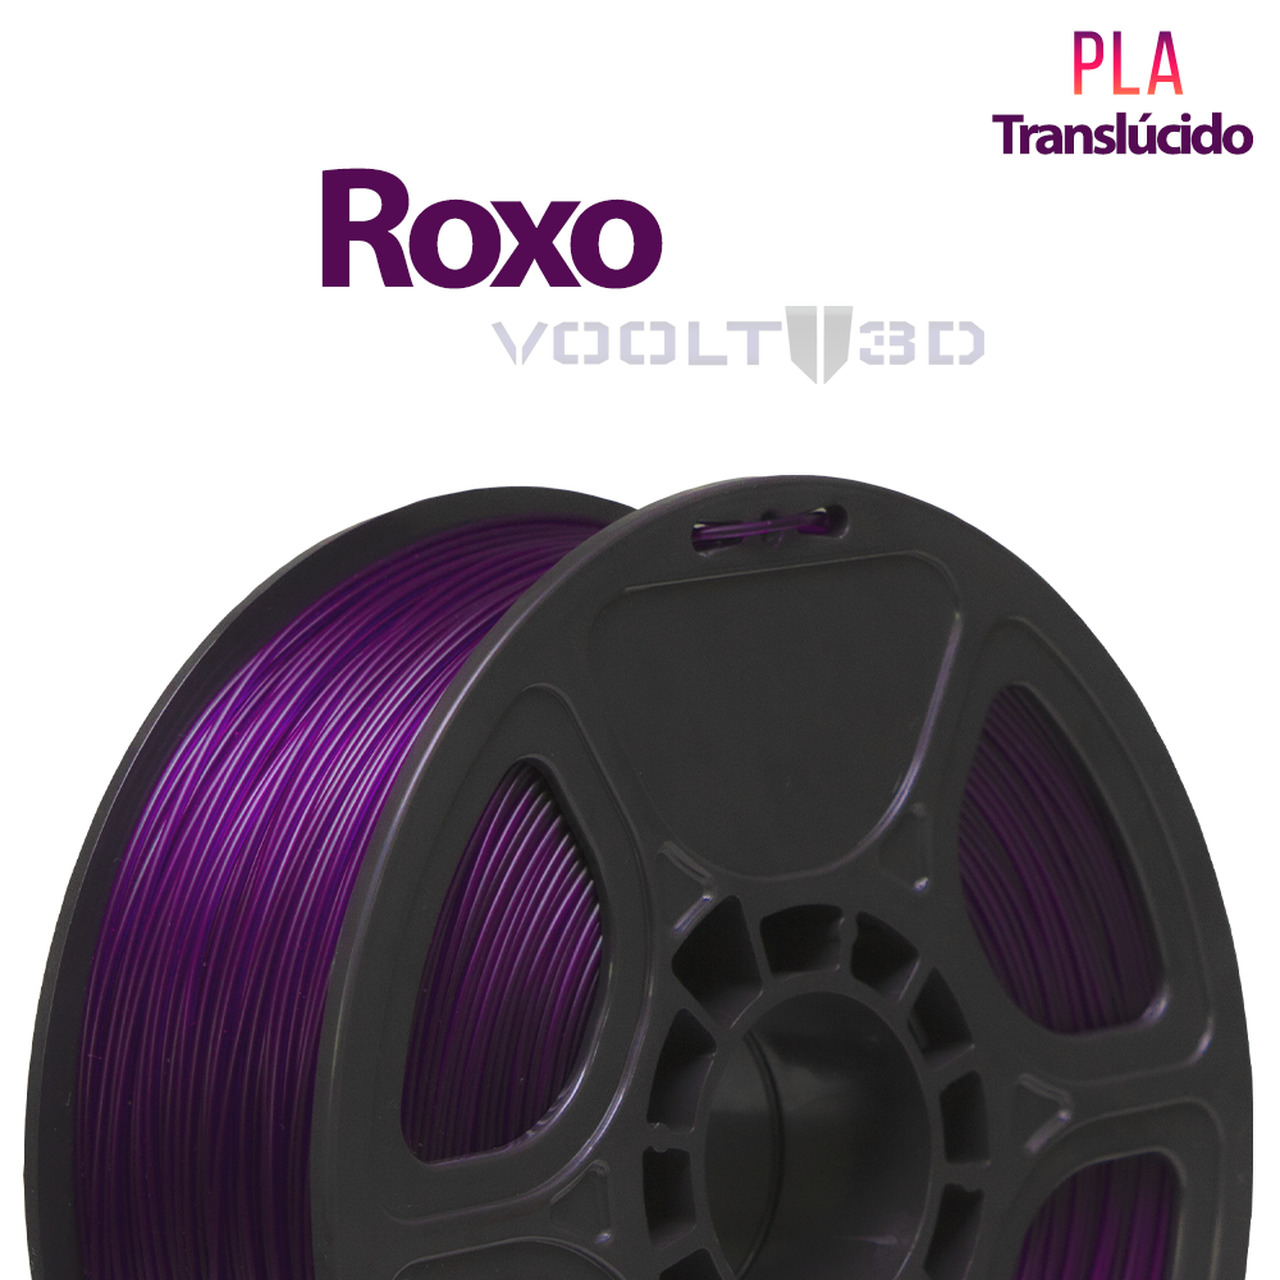 Filamento PLA - Roxo - Voolt3D - 1.75mm - 1kg